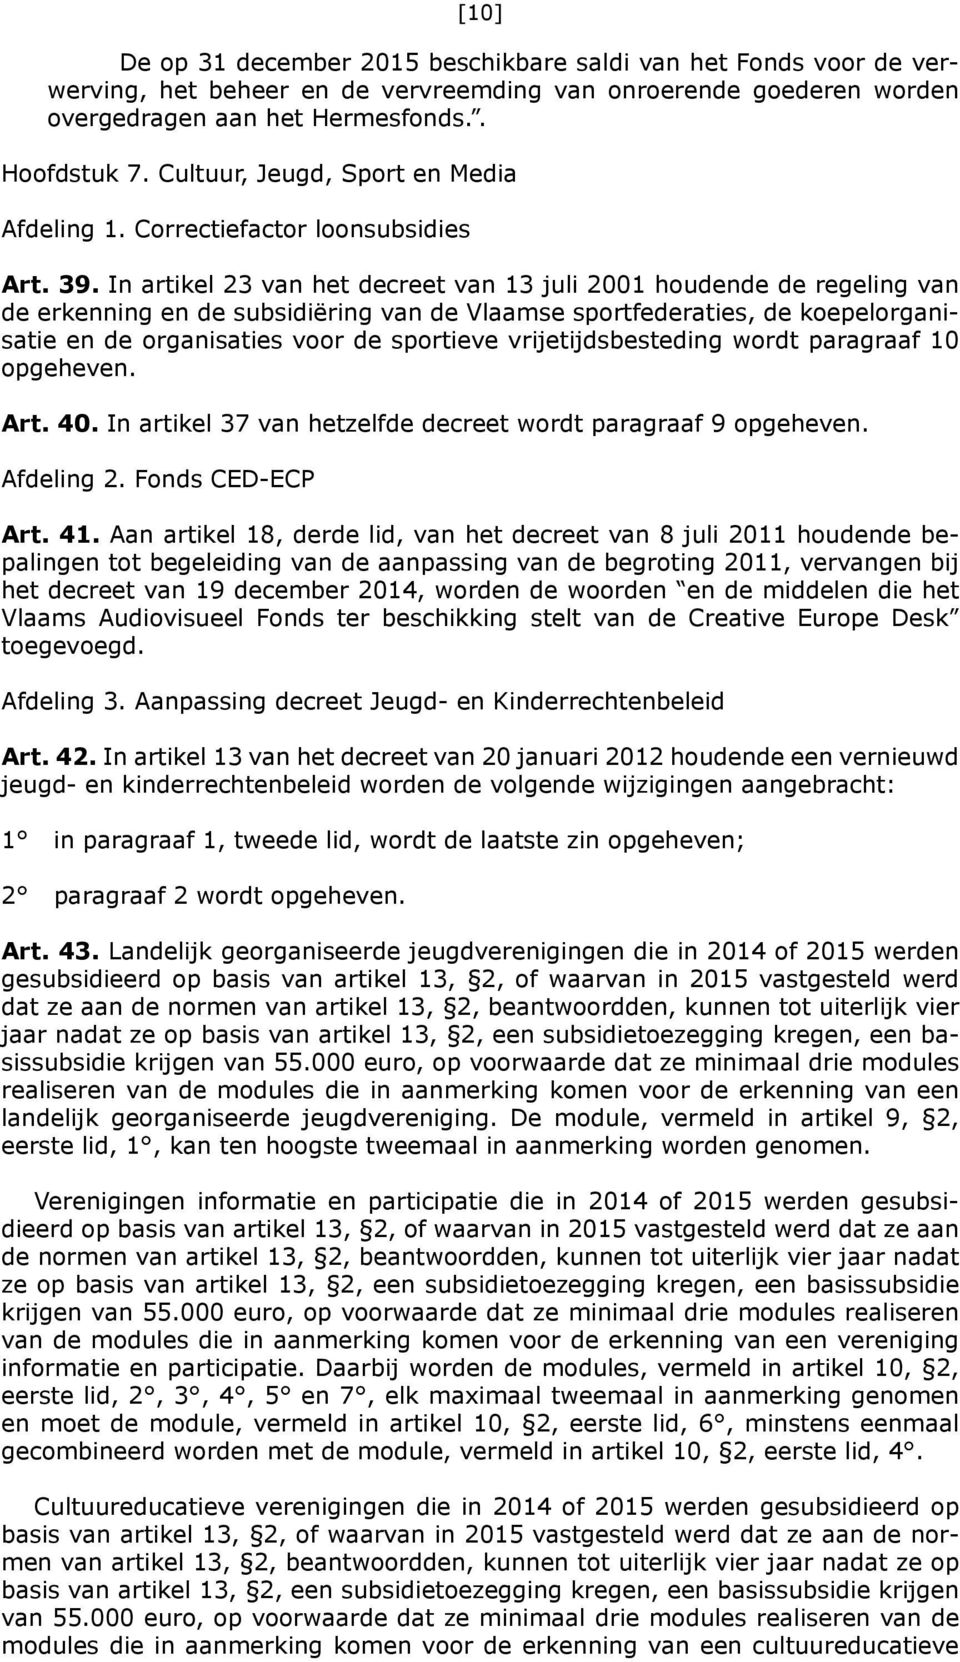 In artikel 23 van het decreet van 13 juli 2001 houdende de regeling van de erkenning en de subsidiëring van de Vlaamse sportfederaties, de koepelorganisatie en de organisaties voor de sportieve